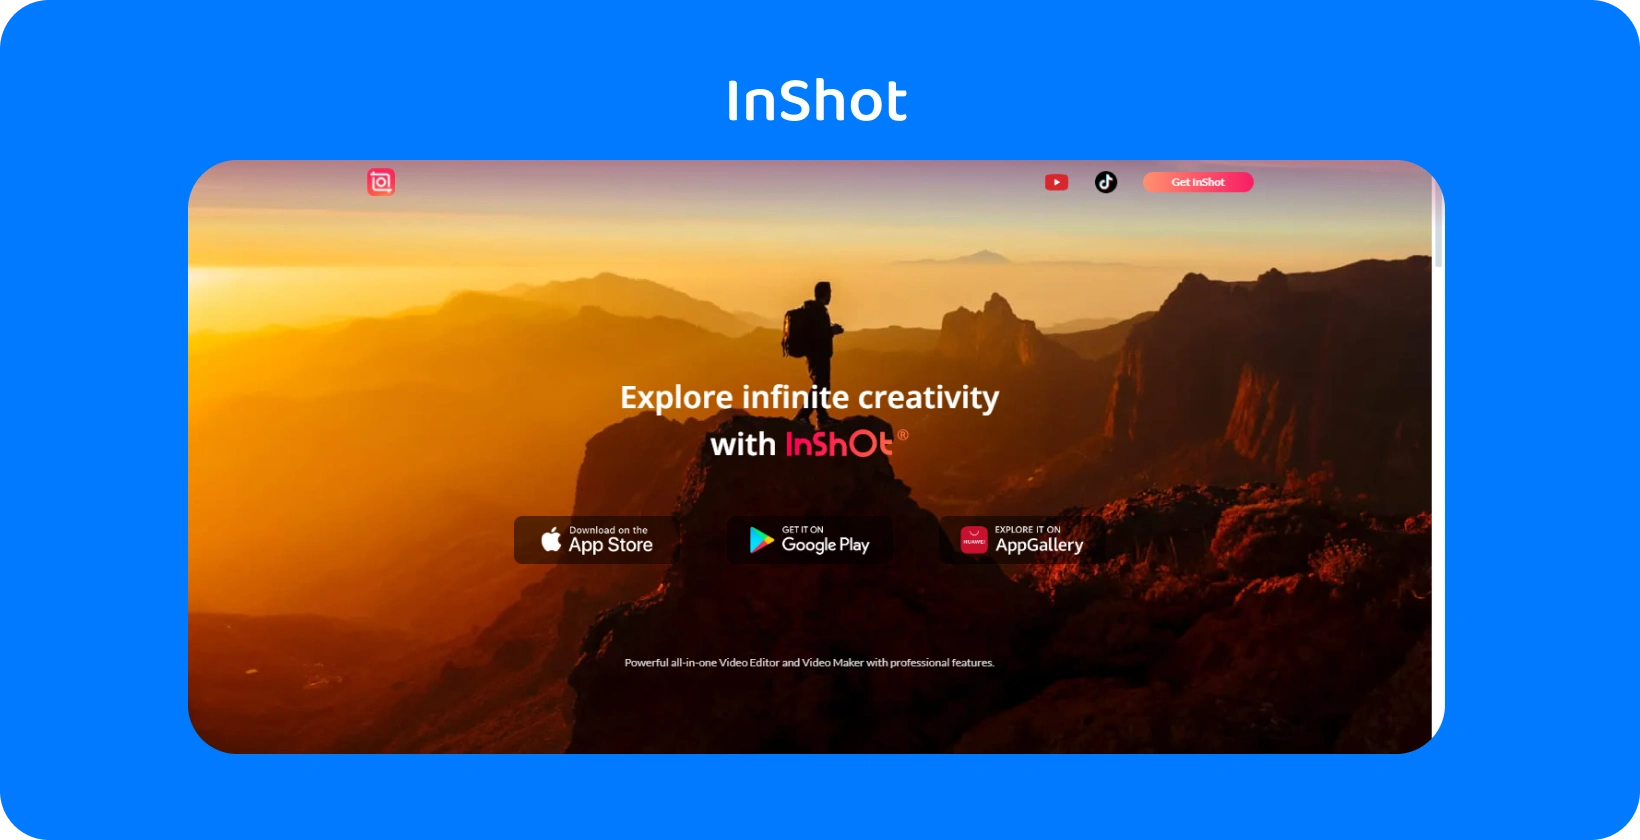 InShot aplikacije u kojoj se prikazuje planinar u sumrak, a koji simbolizuje obećanje aplikacije da će istražiti beskonačnu kreativnost u video montaži.
